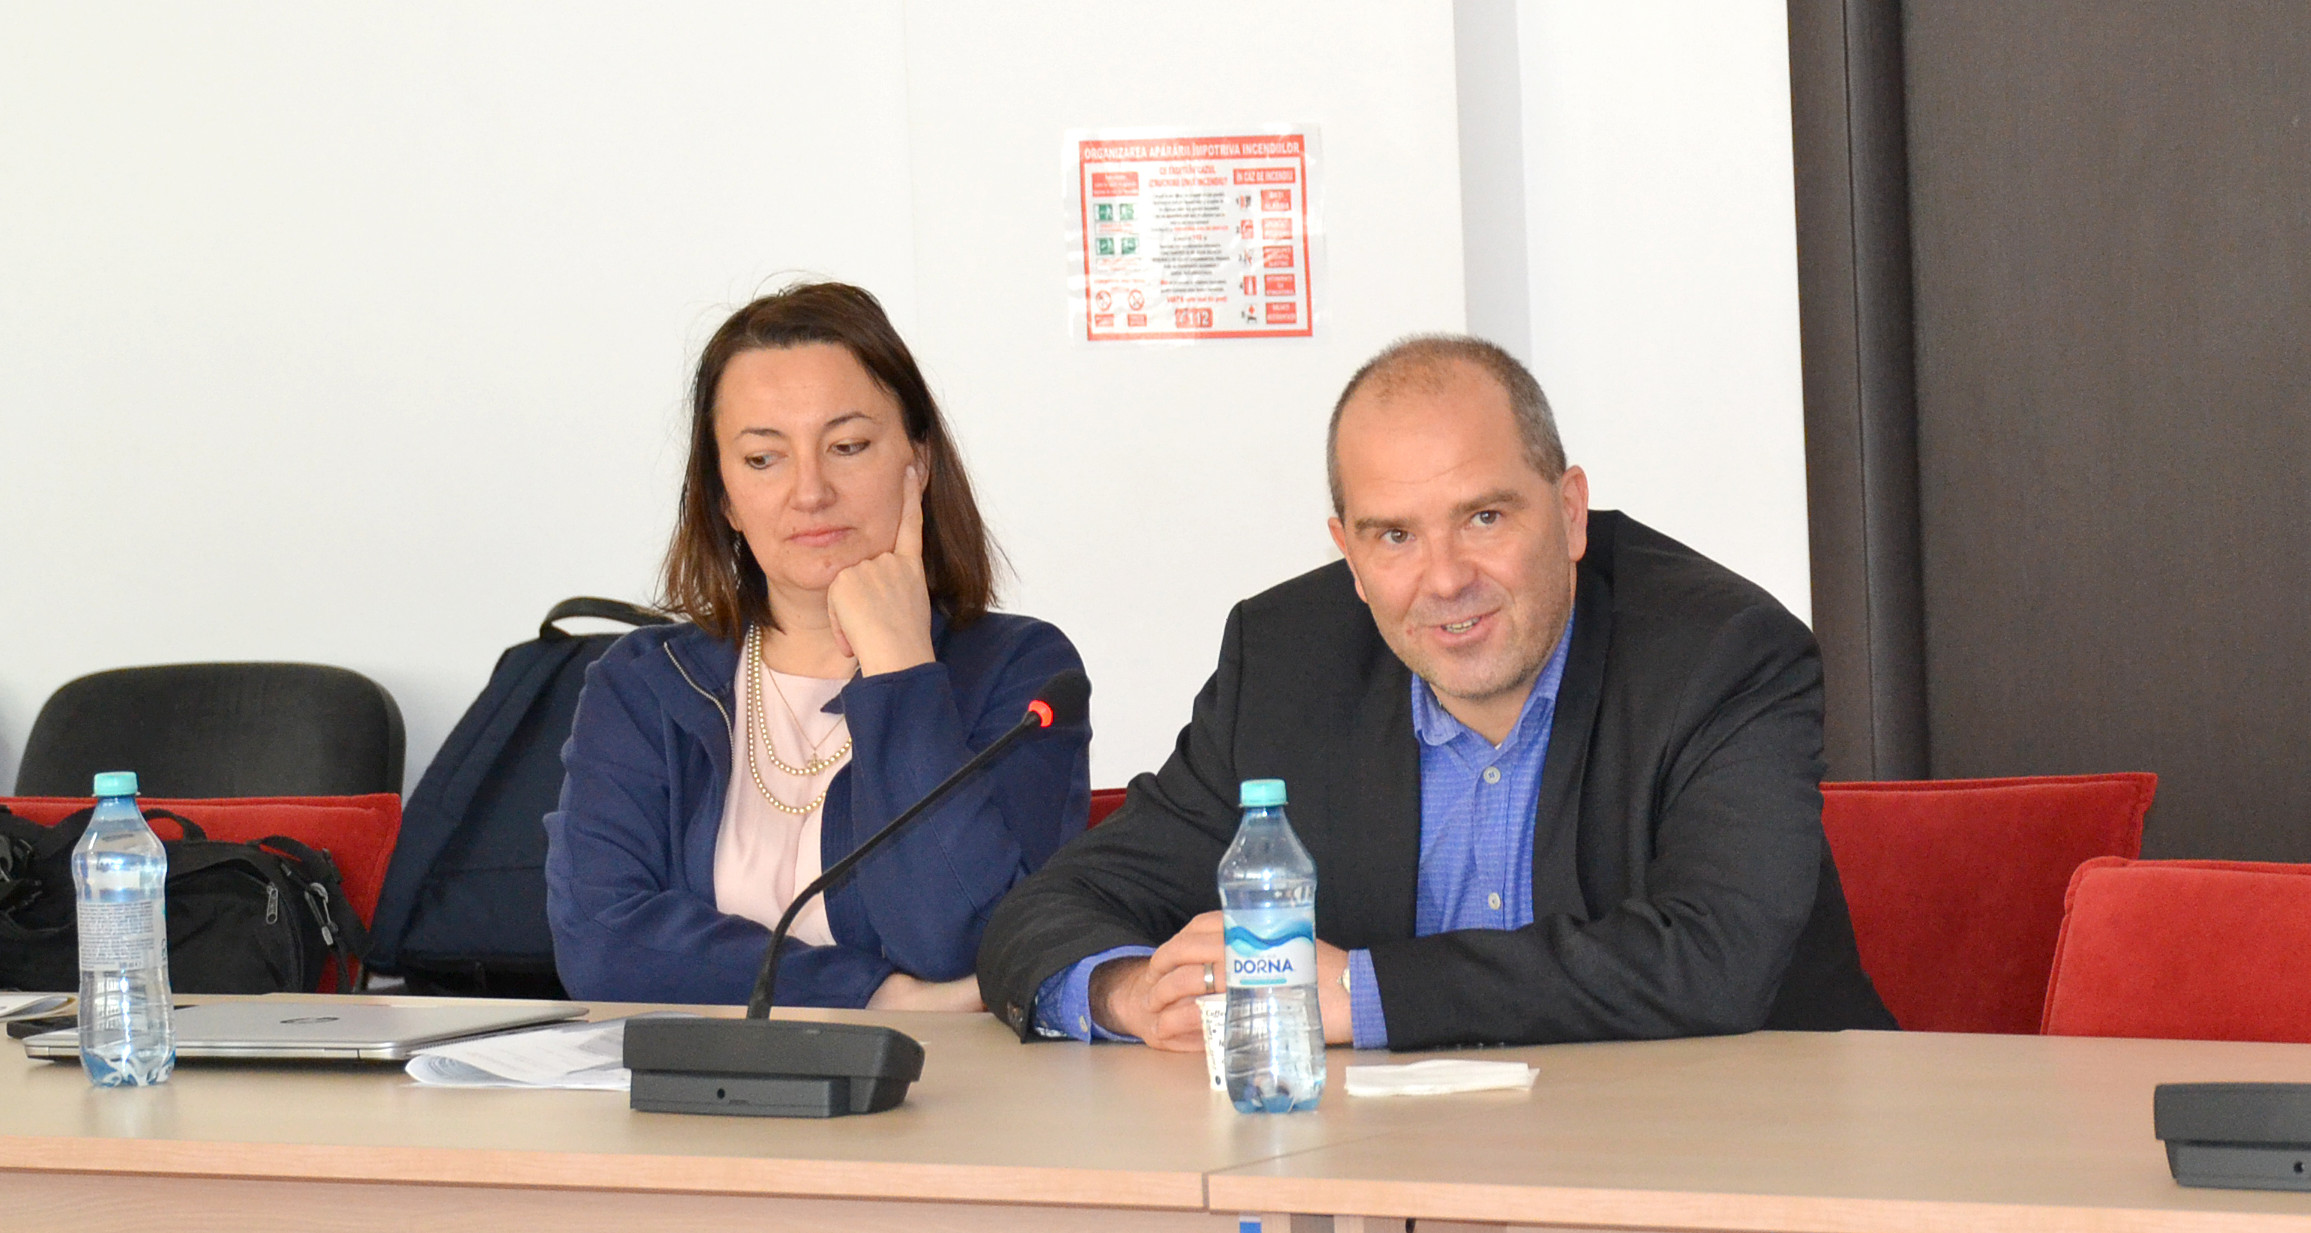 Ana Maria Lupașcu, Senior Economist, alături de Andreas Piontek, Senior Engineer - reprezentanții Băncii Europene de Investiții